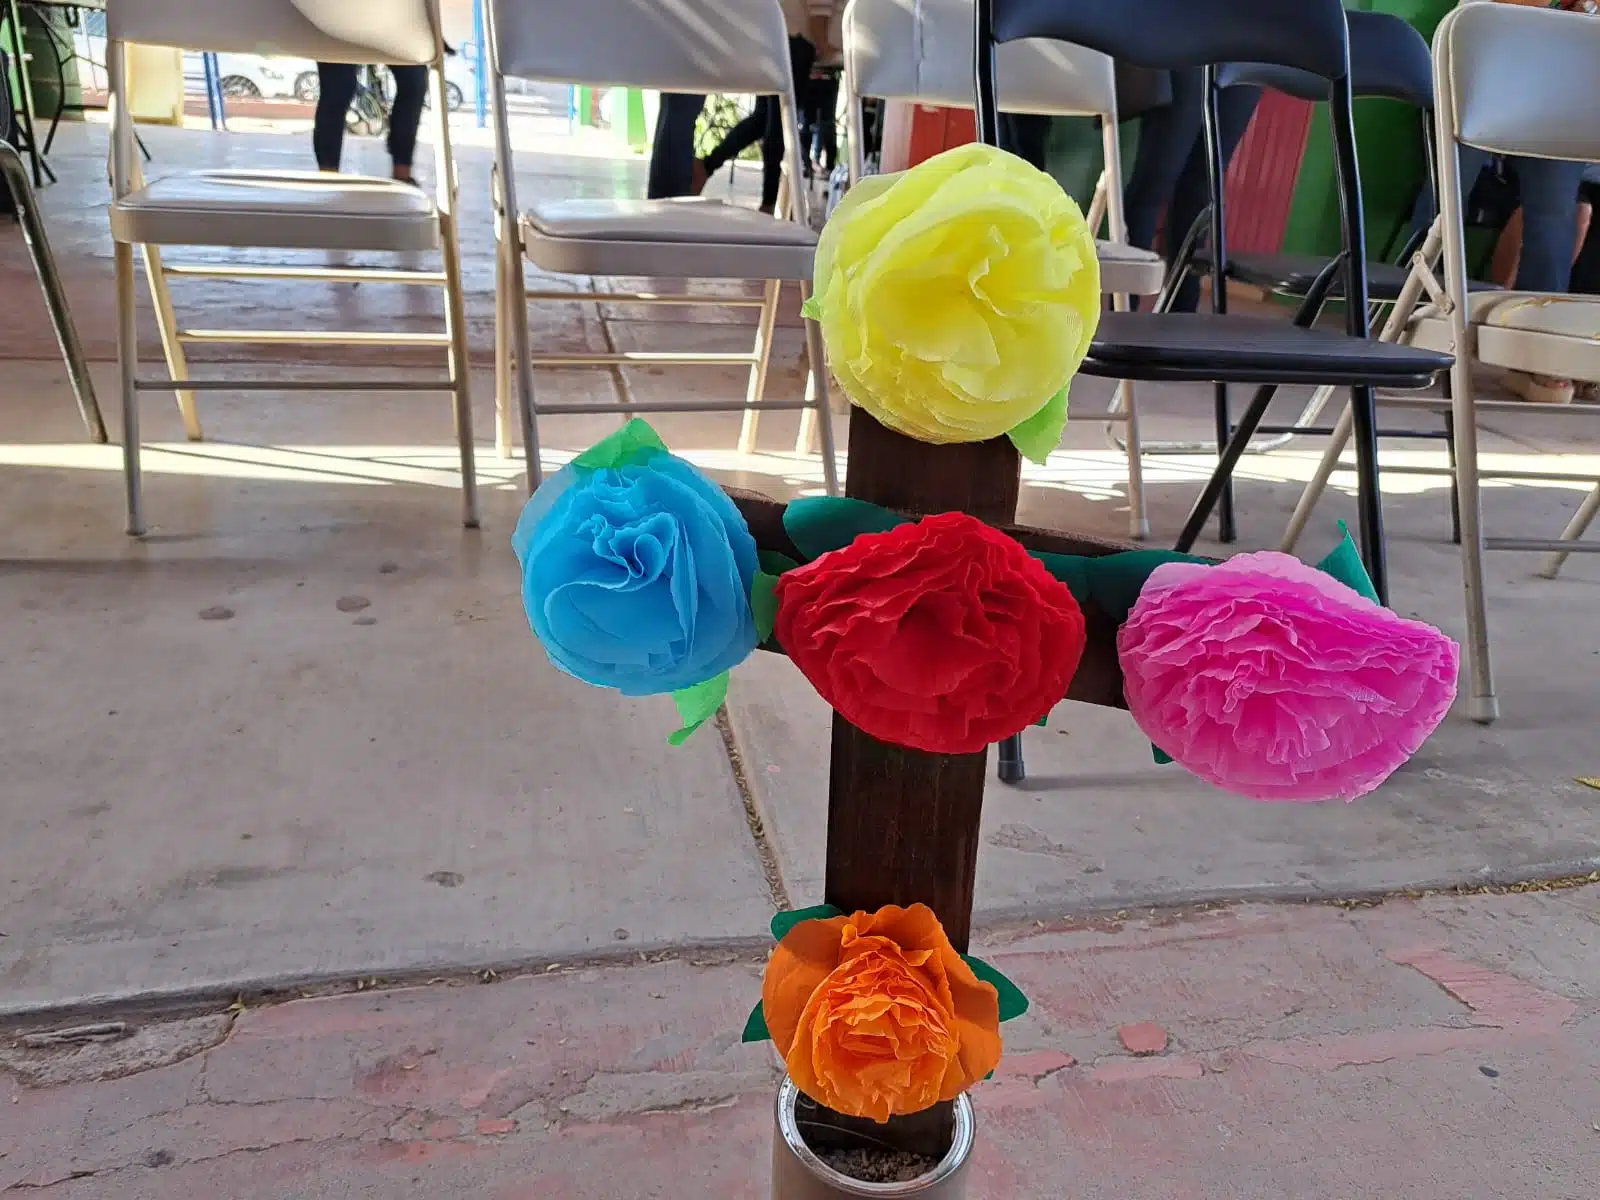 Festival yoreme realizado en el jardín de niños “Bertha Voon Glumer” de San Miguel Zapotitlán